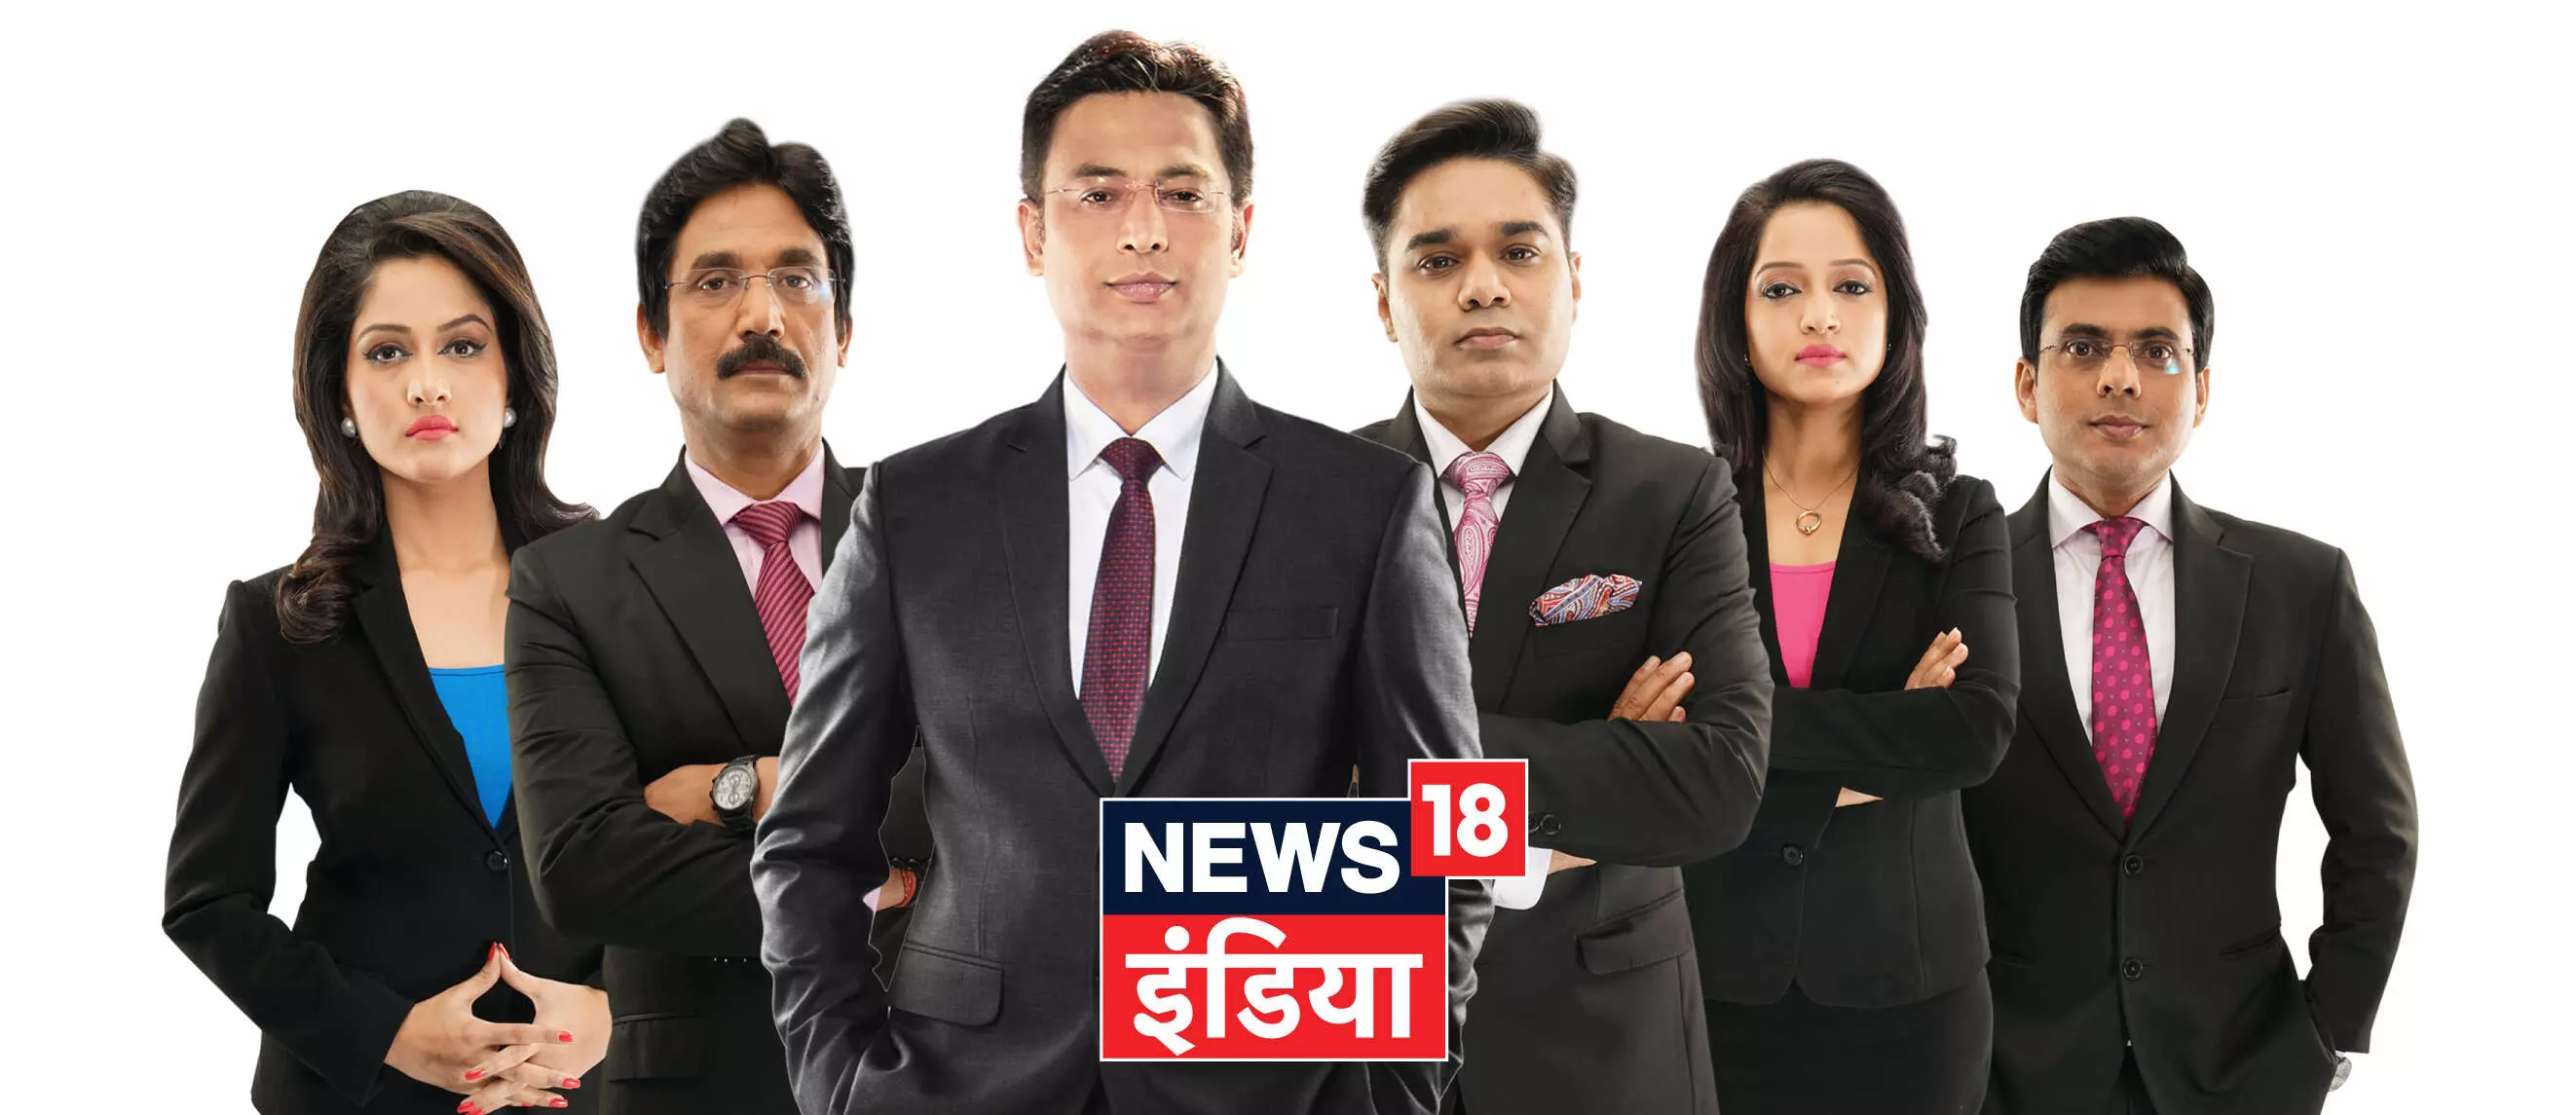 न्यूज़ 18 इंडिया के प्रमुख TV एंकर | News18 India Top Anchor List In Hindi